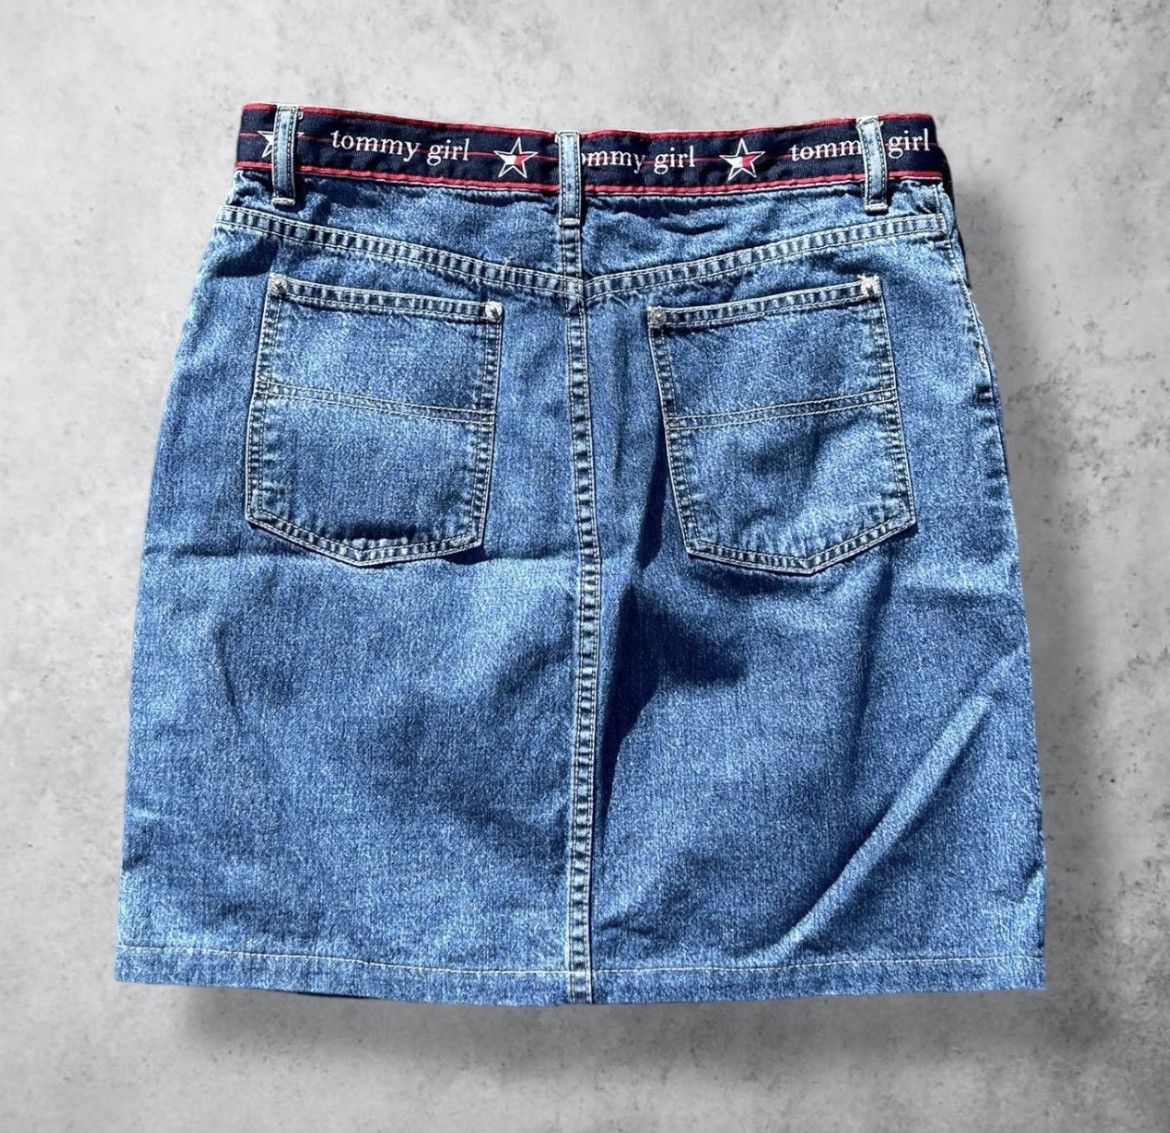 Vintage Vintage Tommy Hilfiger Tommy Girl Mini Denim Jean Skirt Size 30" / US 8 / IT 44 - 2 Preview